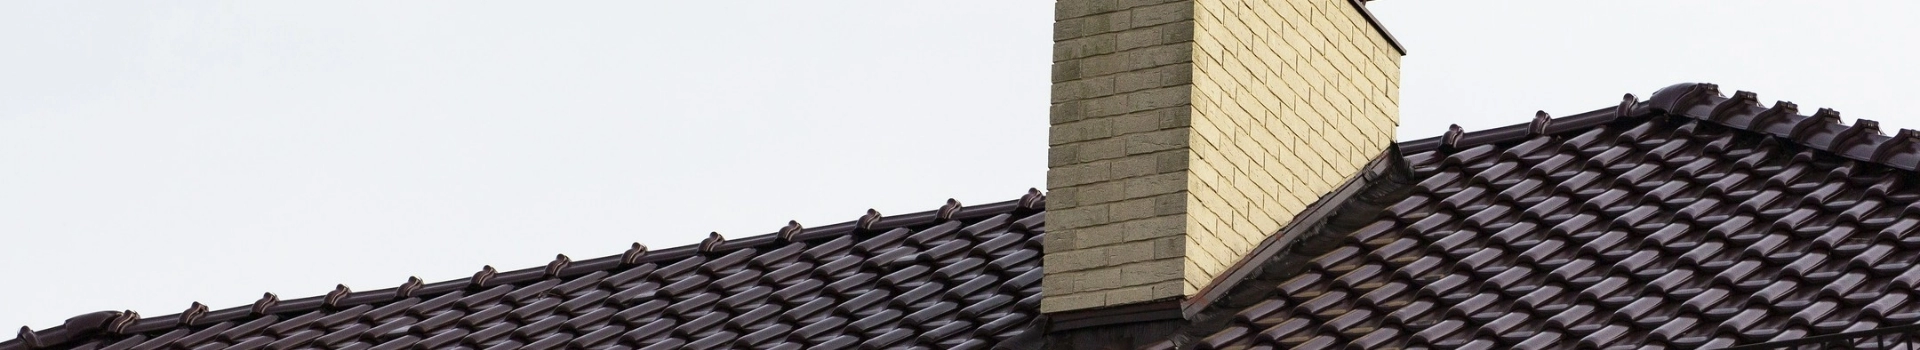 Komin z jasnej cegły na ciemnym dachu